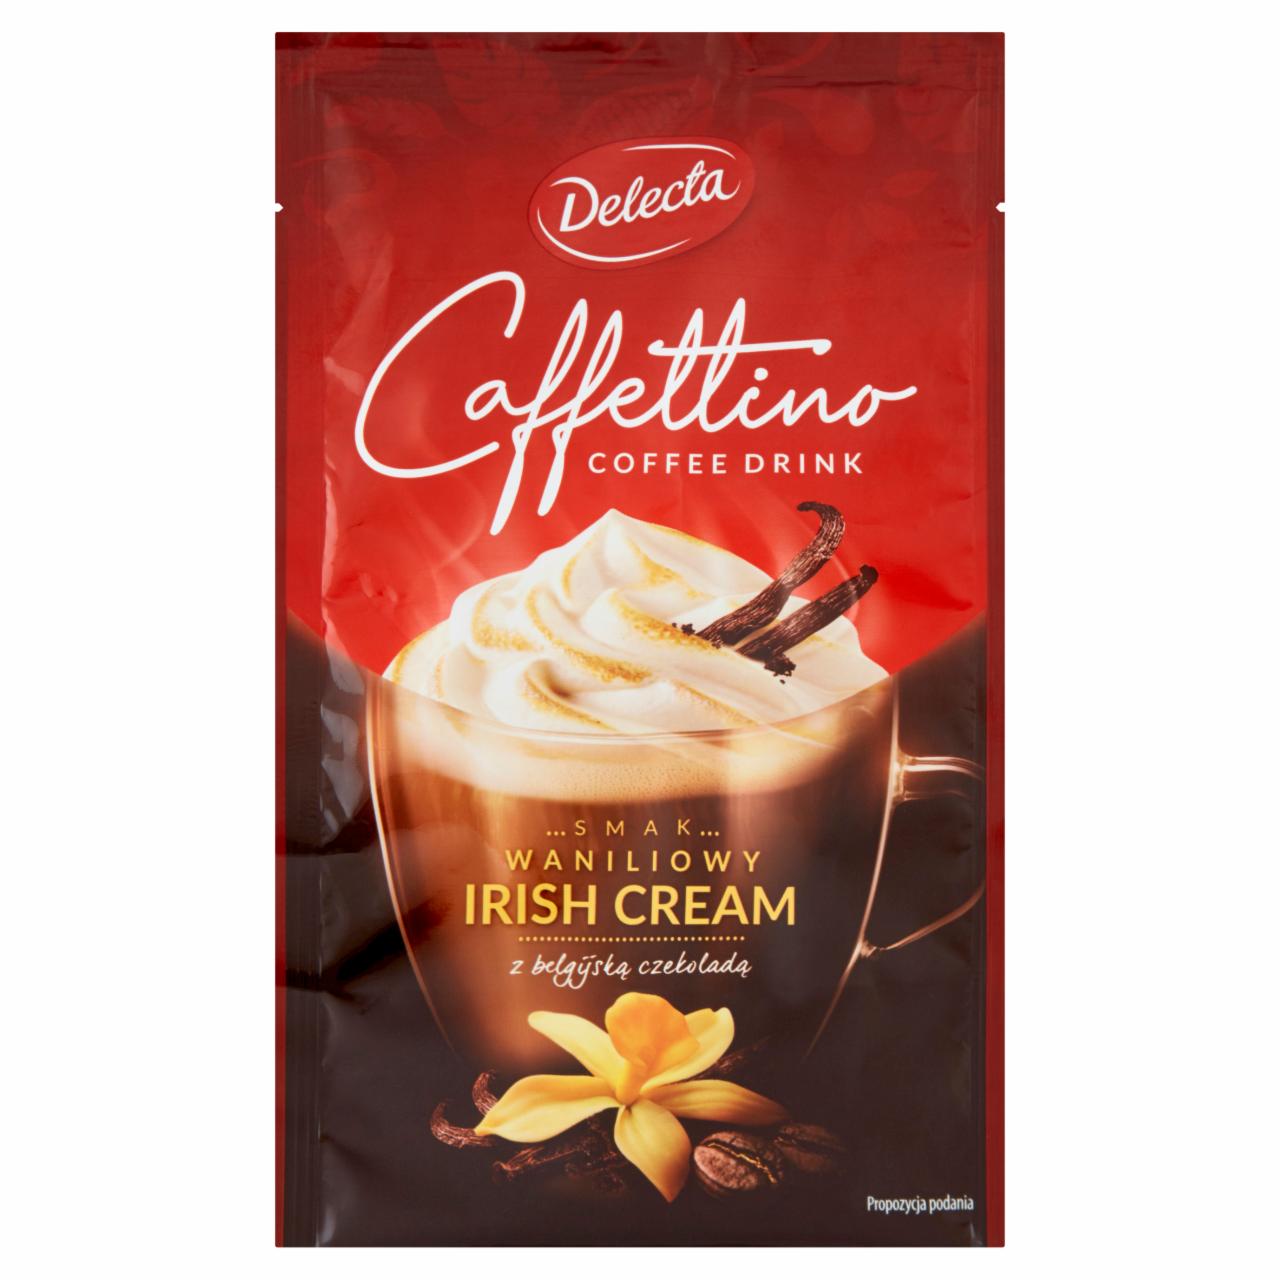 Zdjęcia - Delecta Caffettino Napój czekoladowo-kawowy w proszku smak waniliowy irish cream 22 g